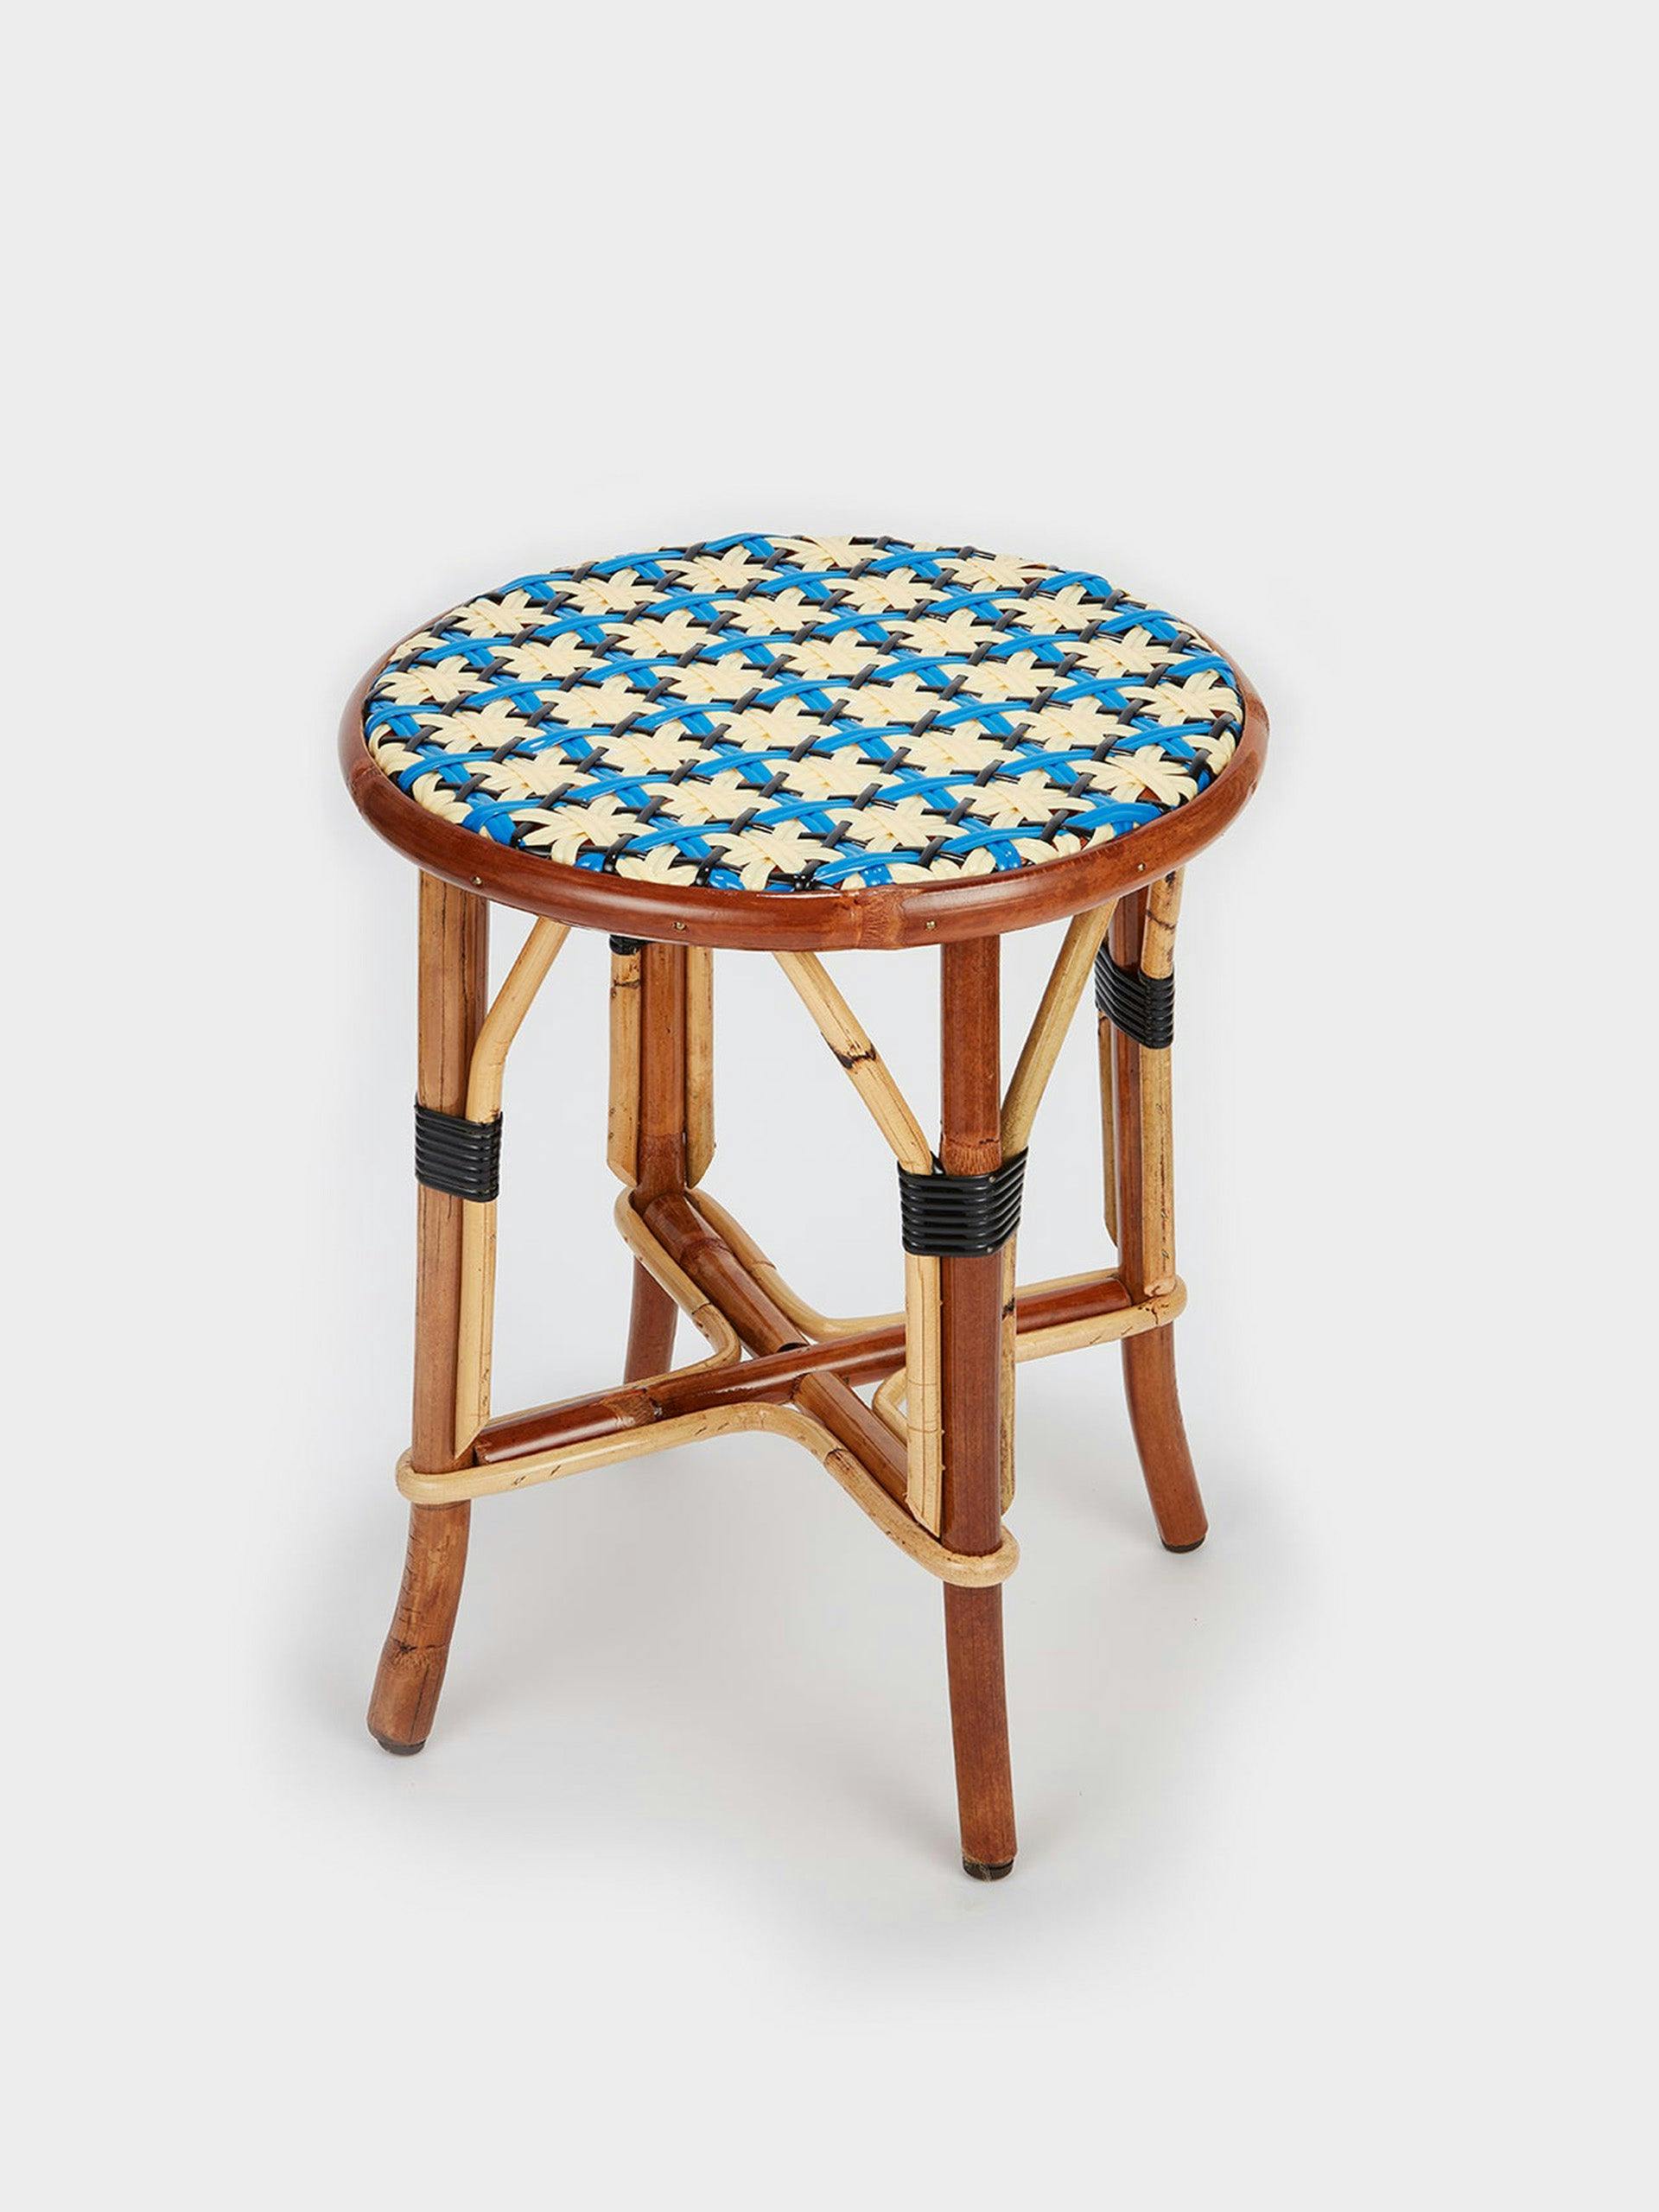 Brasserie inspired rattan stool